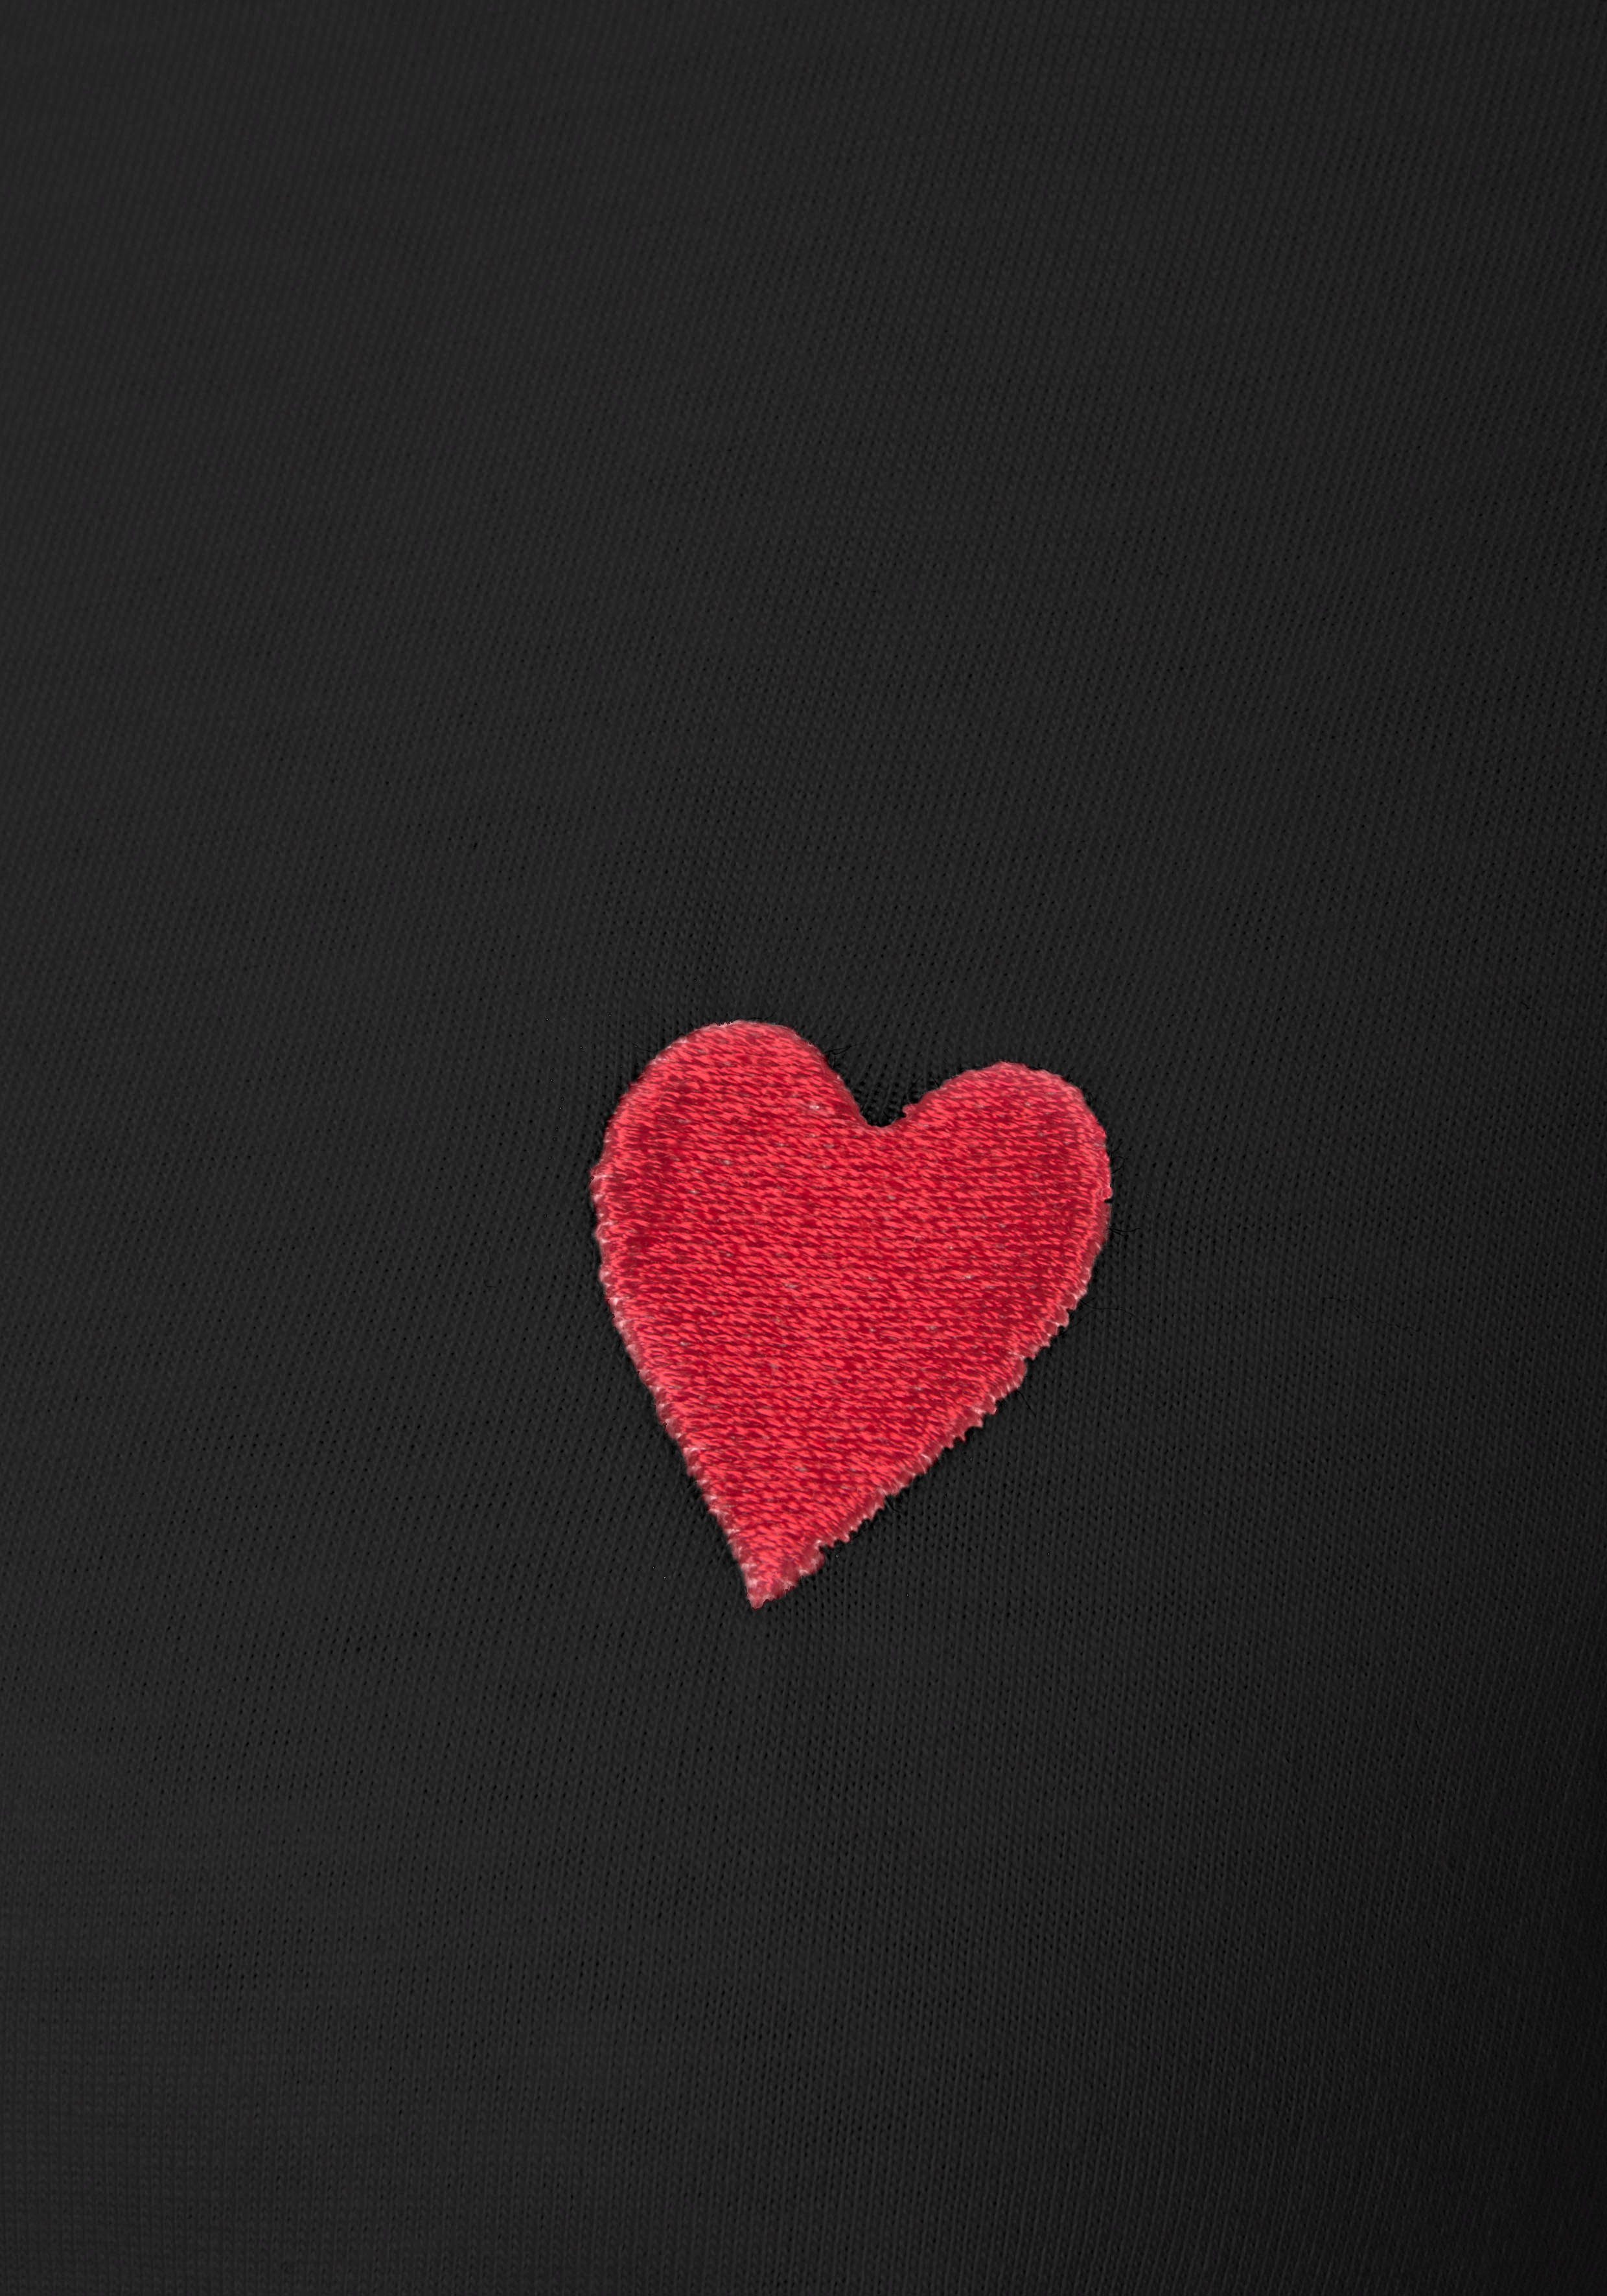 Kurzarmshirt süßer T-Shirt Baumwolle Herz-Stickerei, mit schwarz LASCANA aus